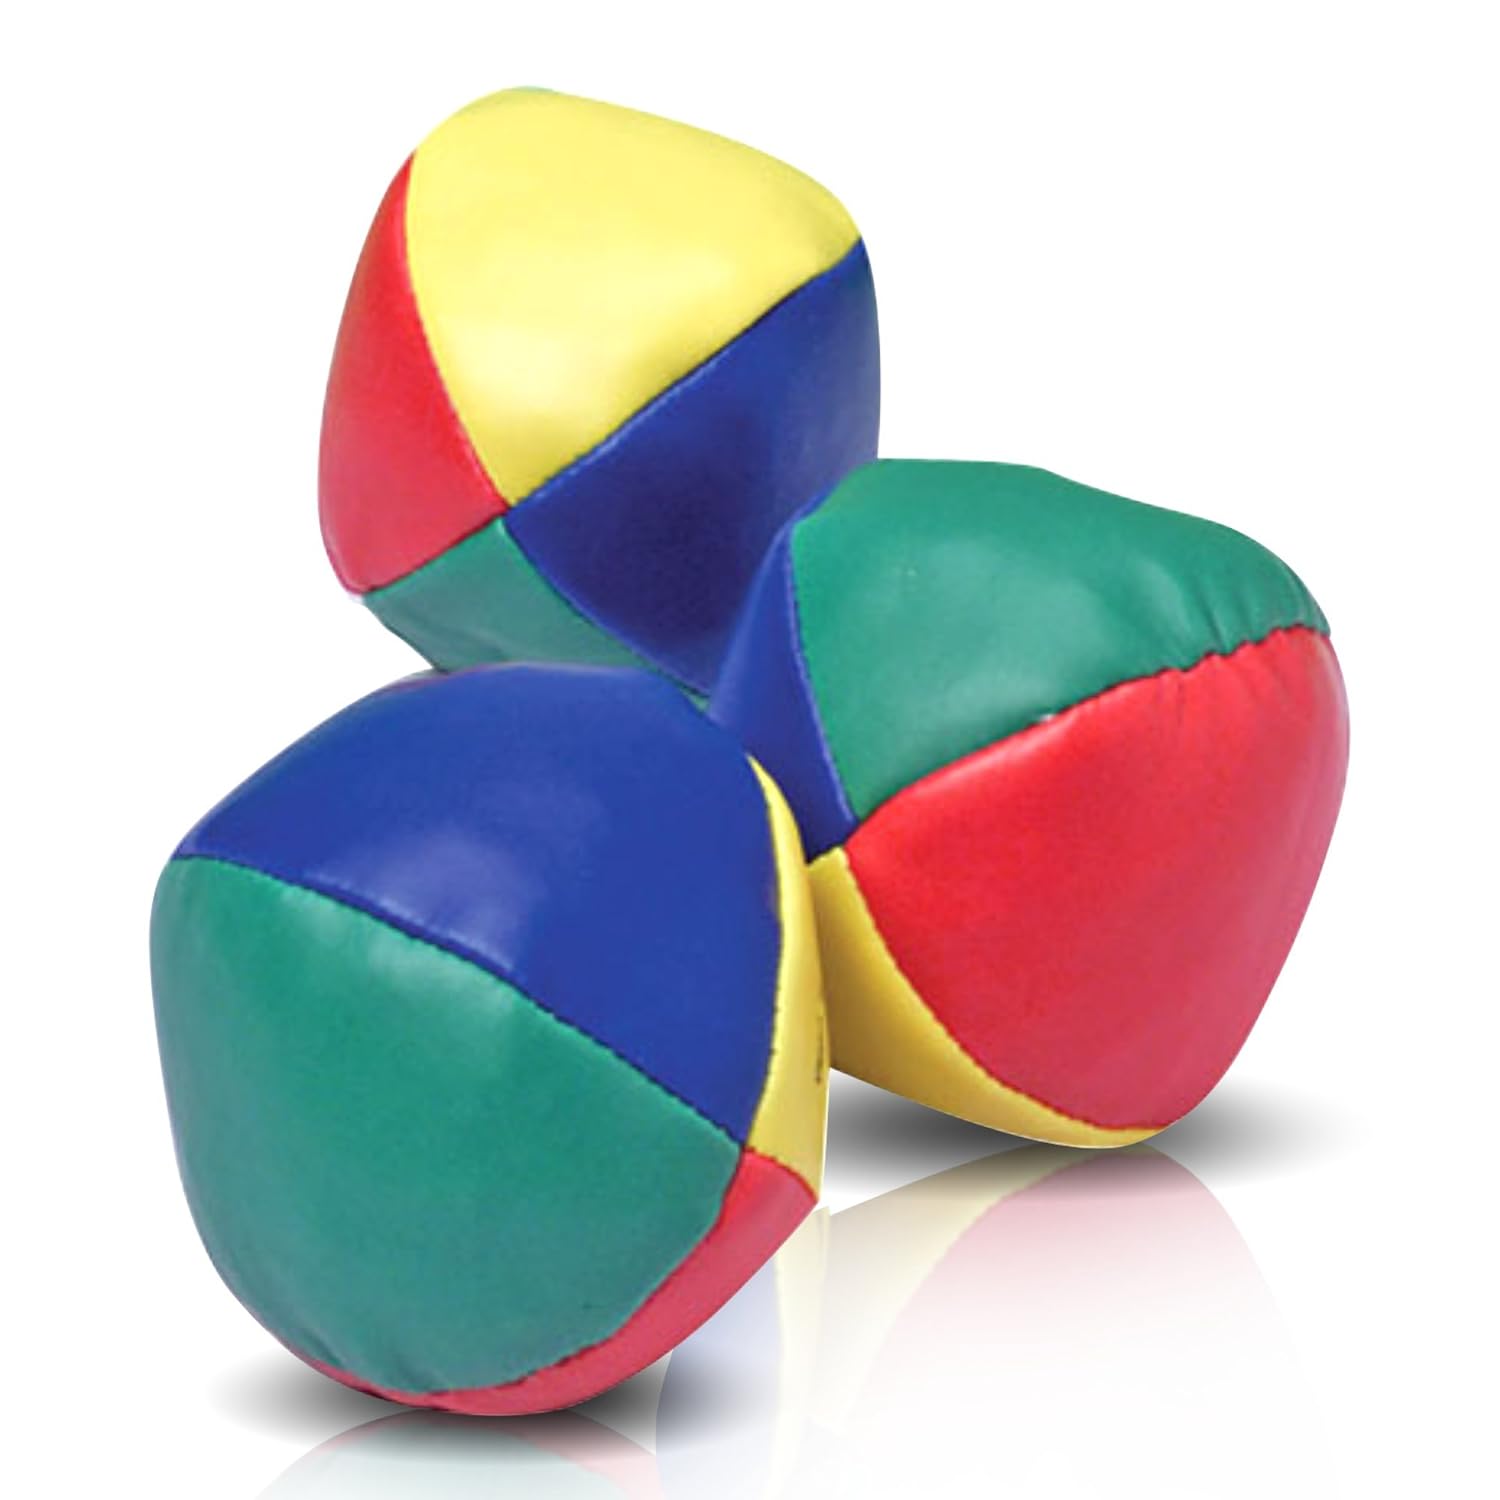 Juggling Balls Toy - Set of 3